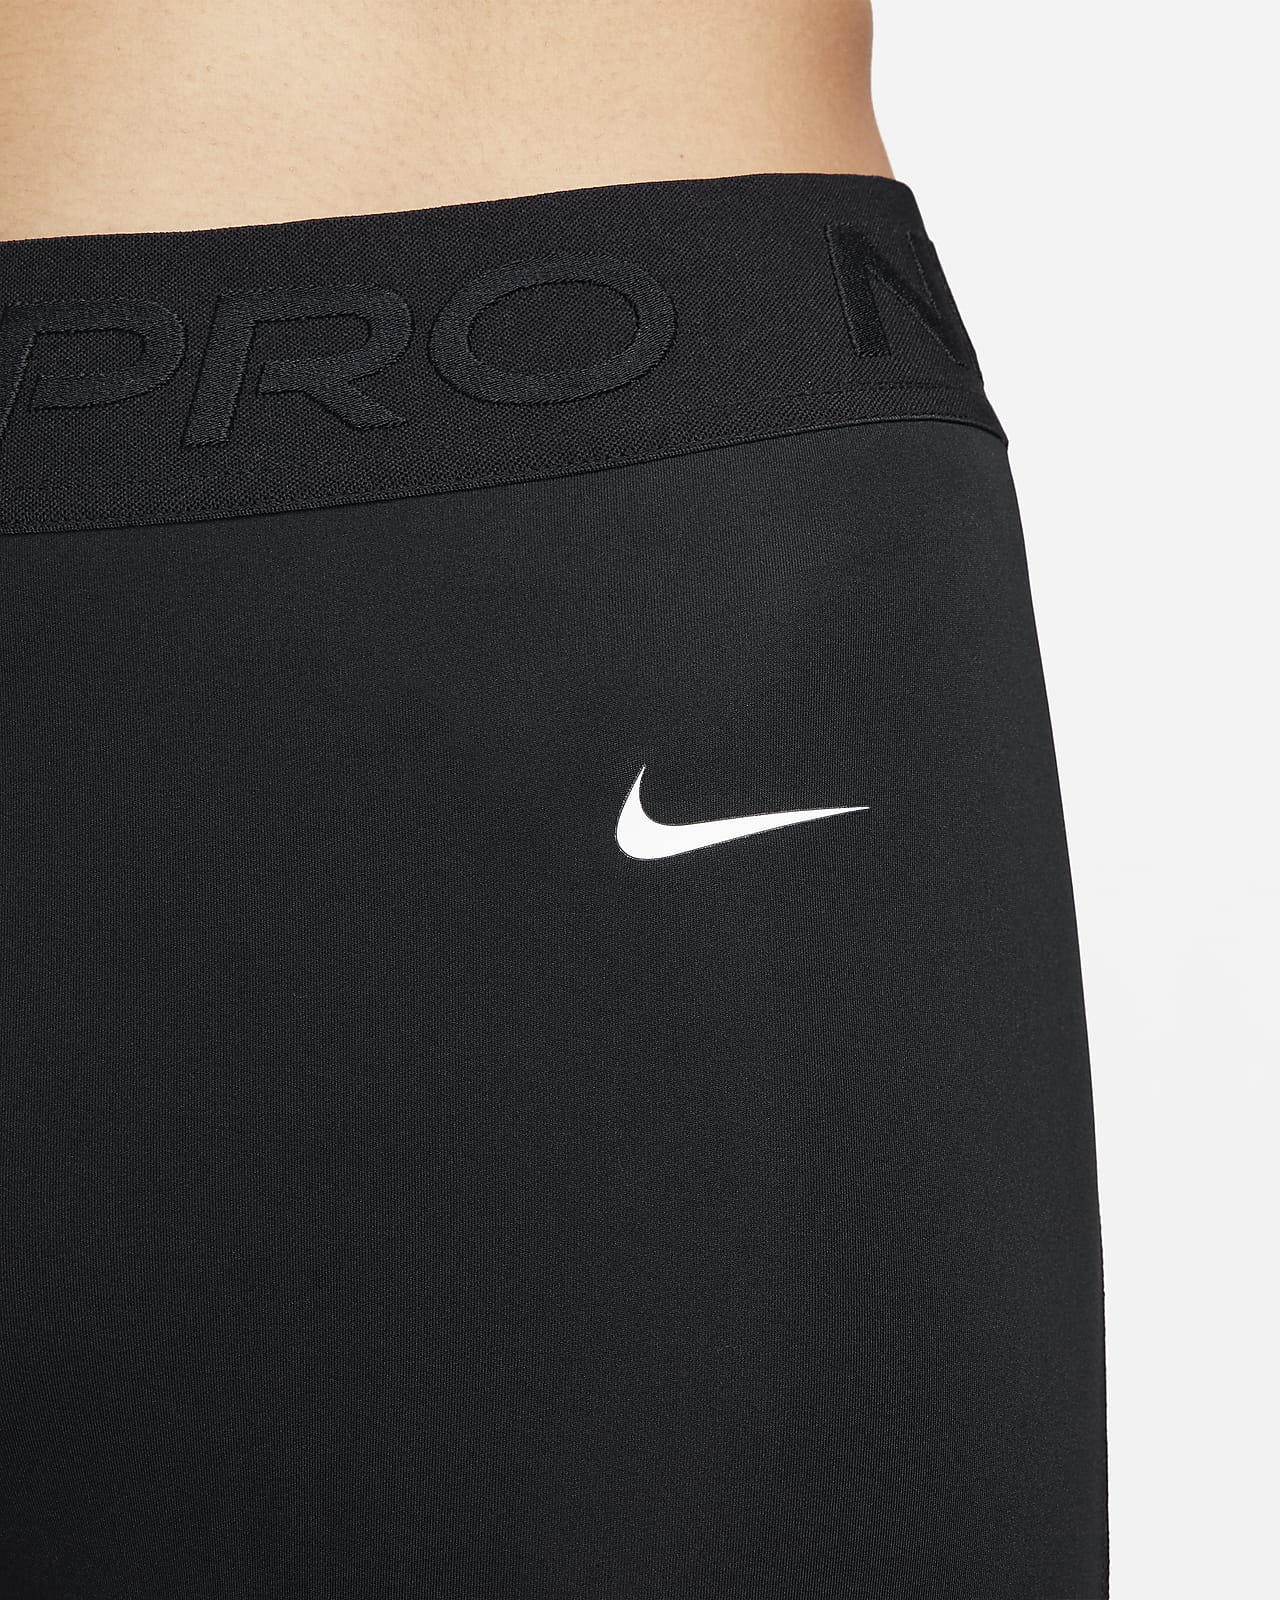 ✨🆕✨ Nike Dri-FIT One Mid-Rise 7/8 Leggings- Size XS